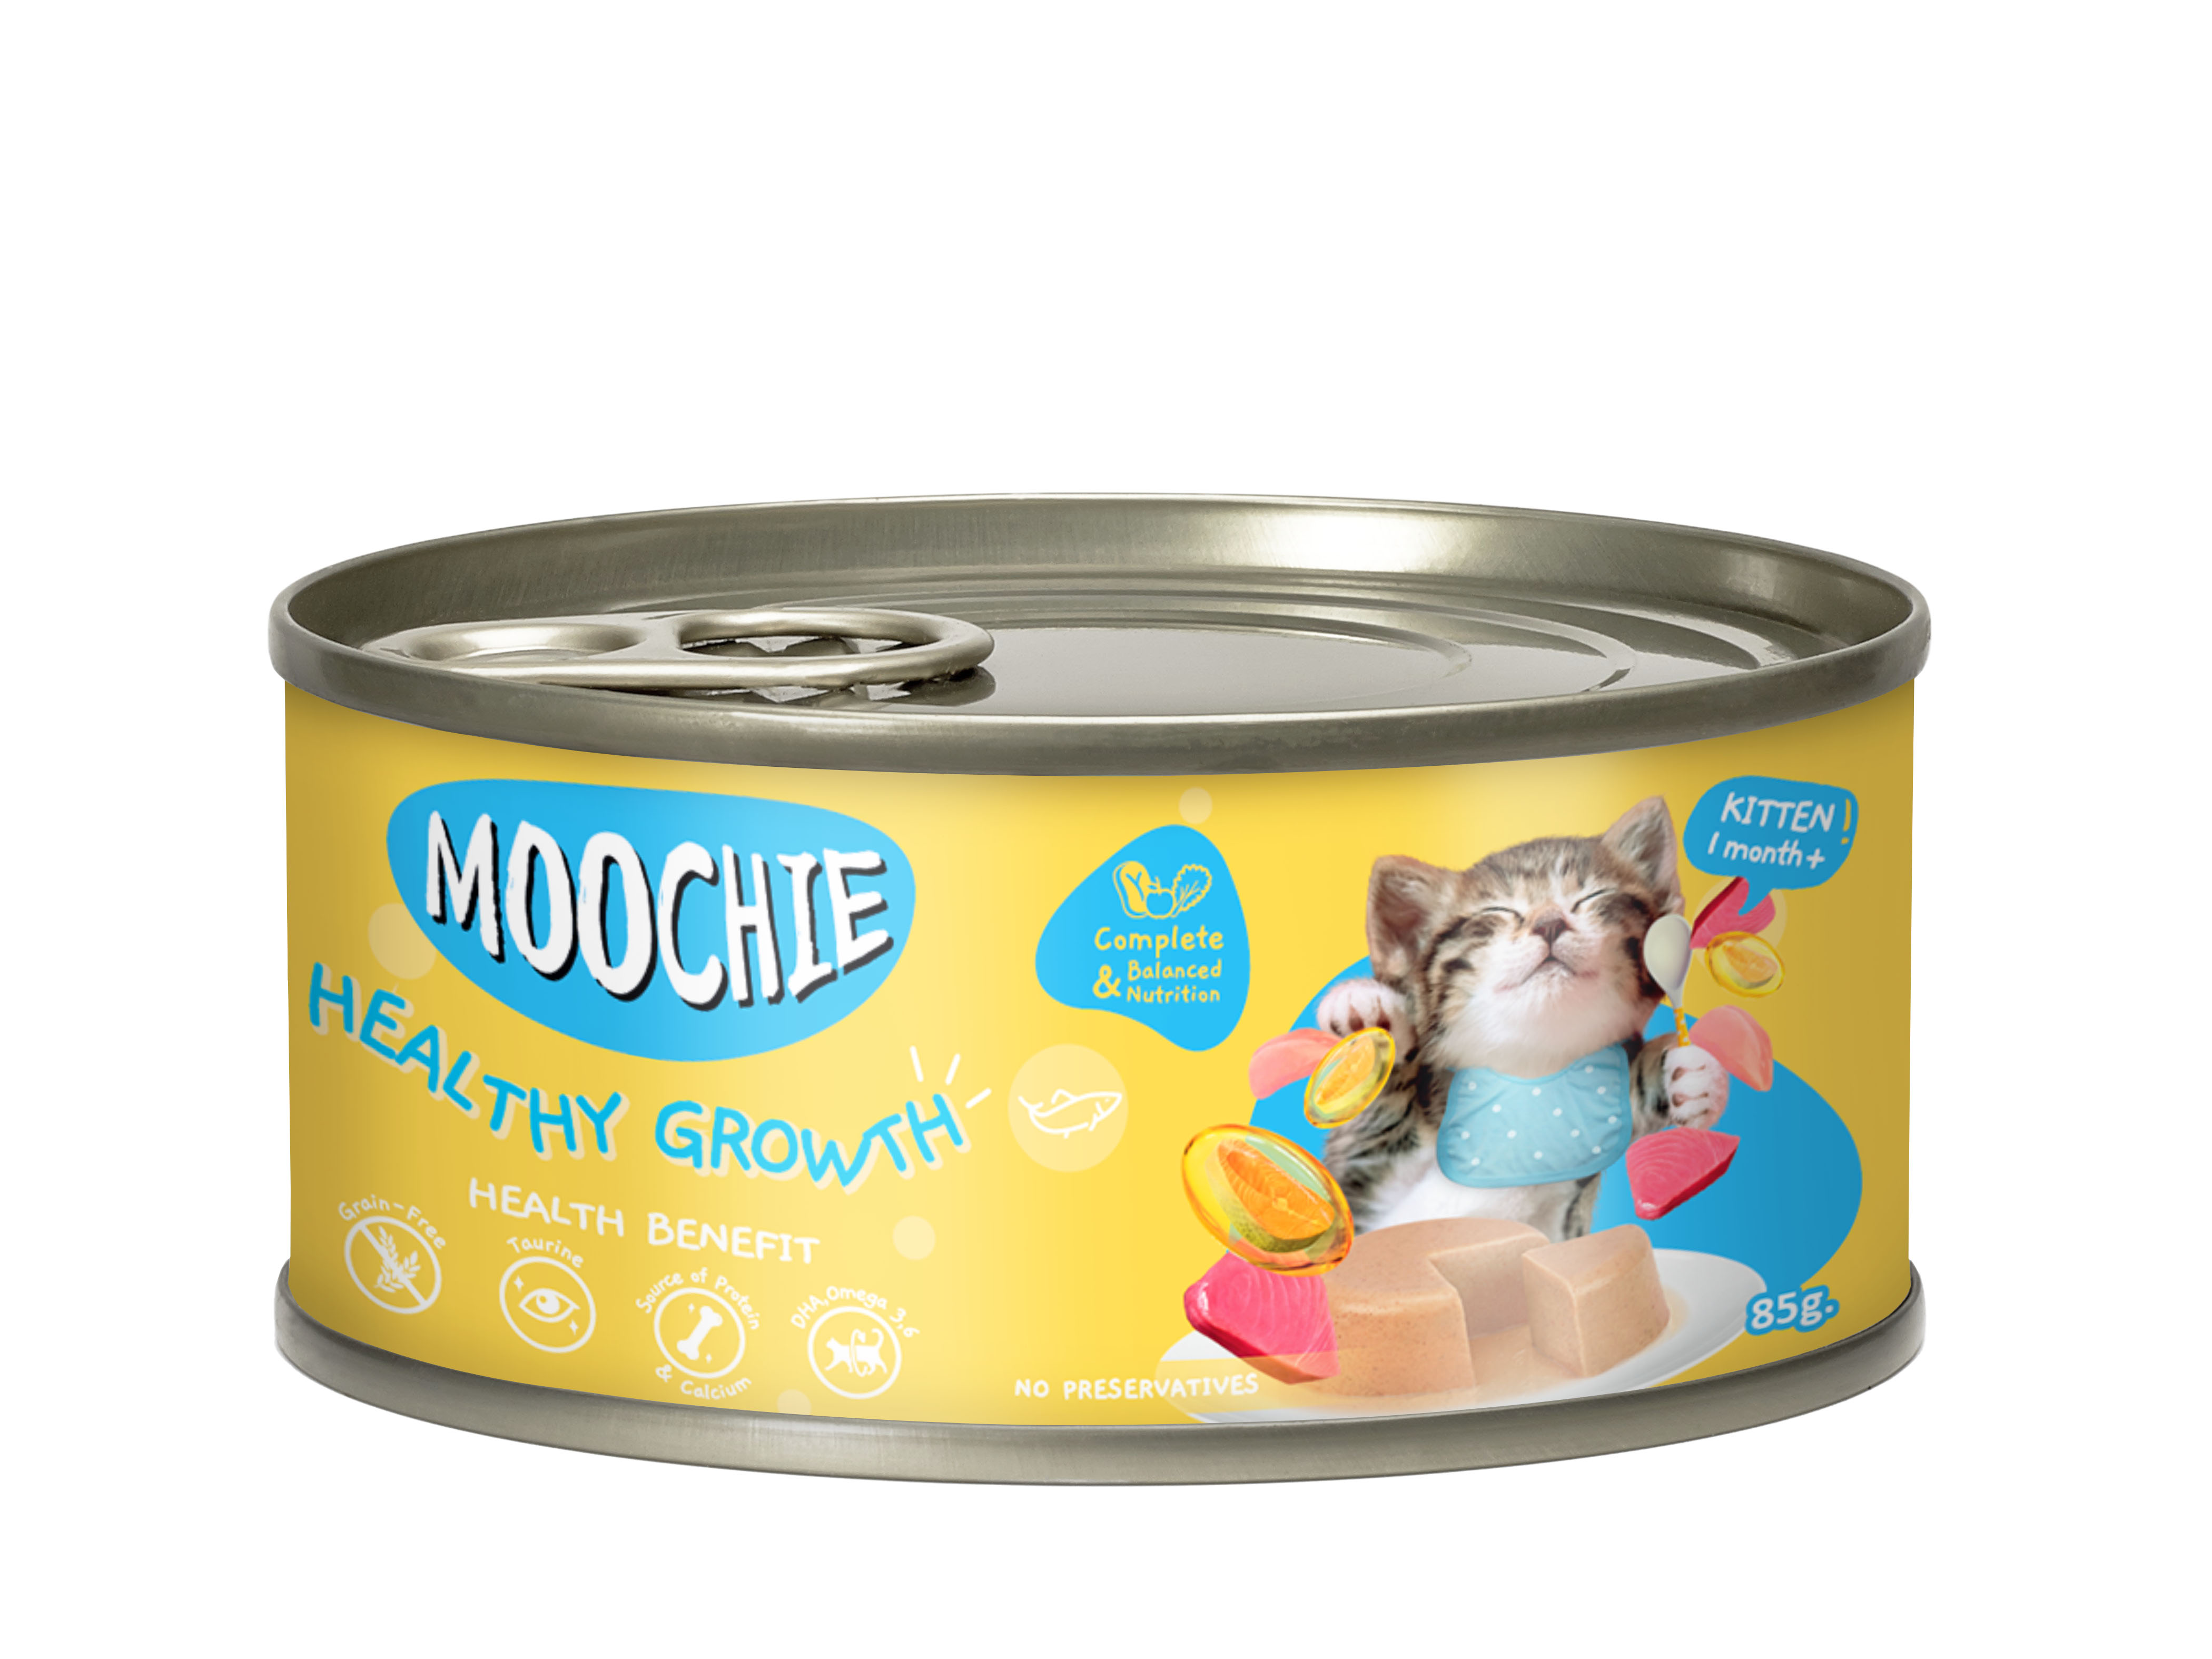 Moochie Kitten Mousse Tuna & Chicken Recipe 85g Can